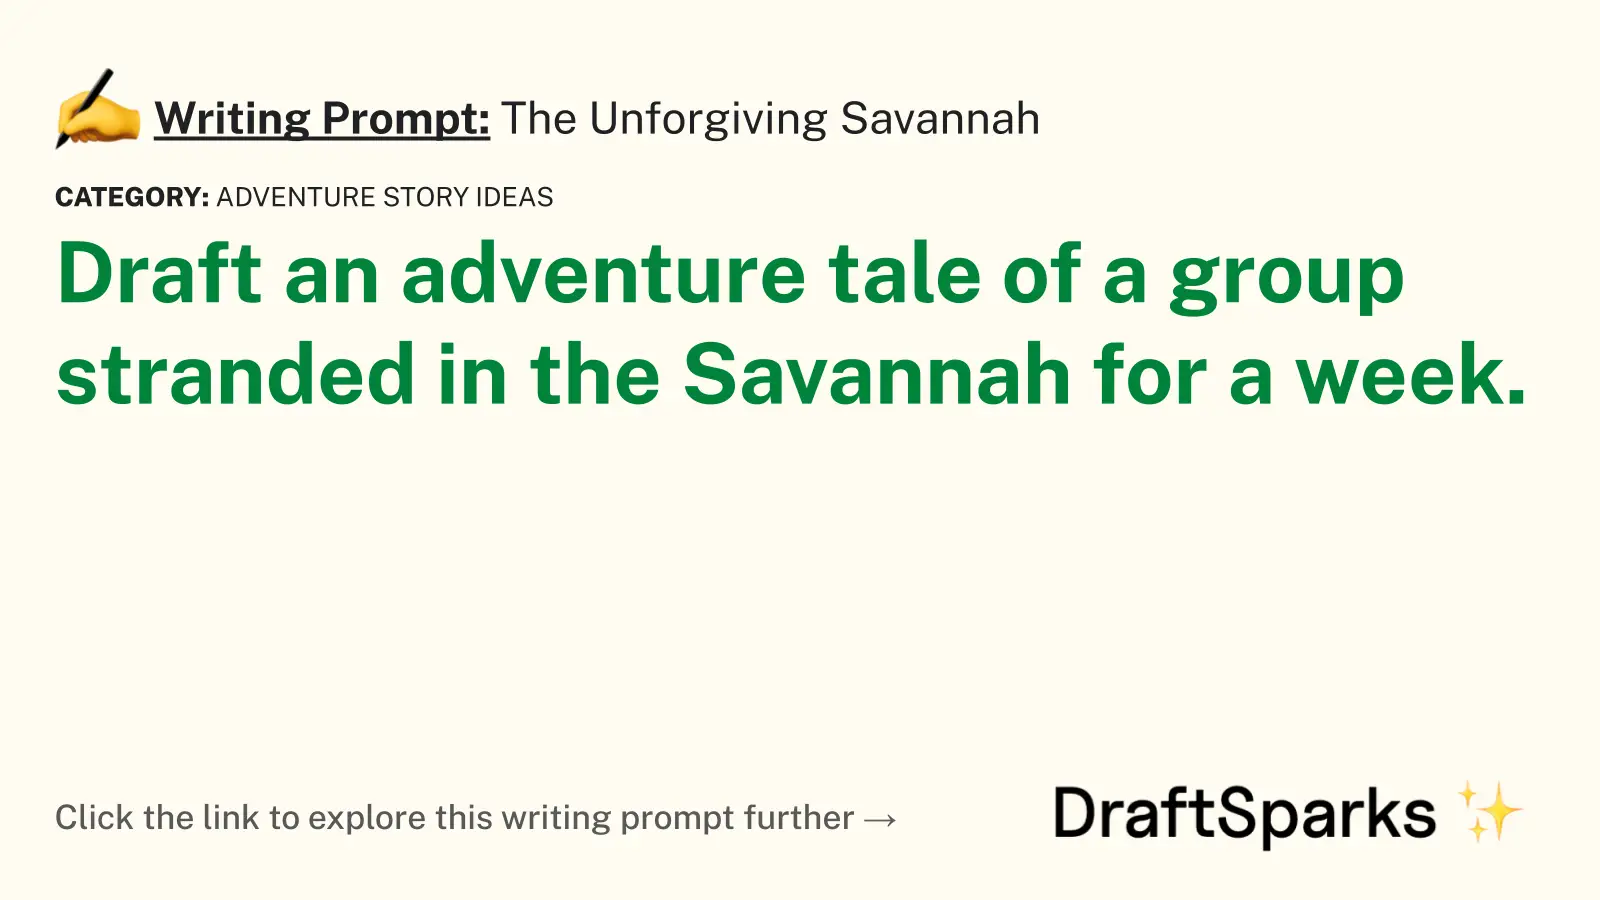 The Unforgiving Savannah